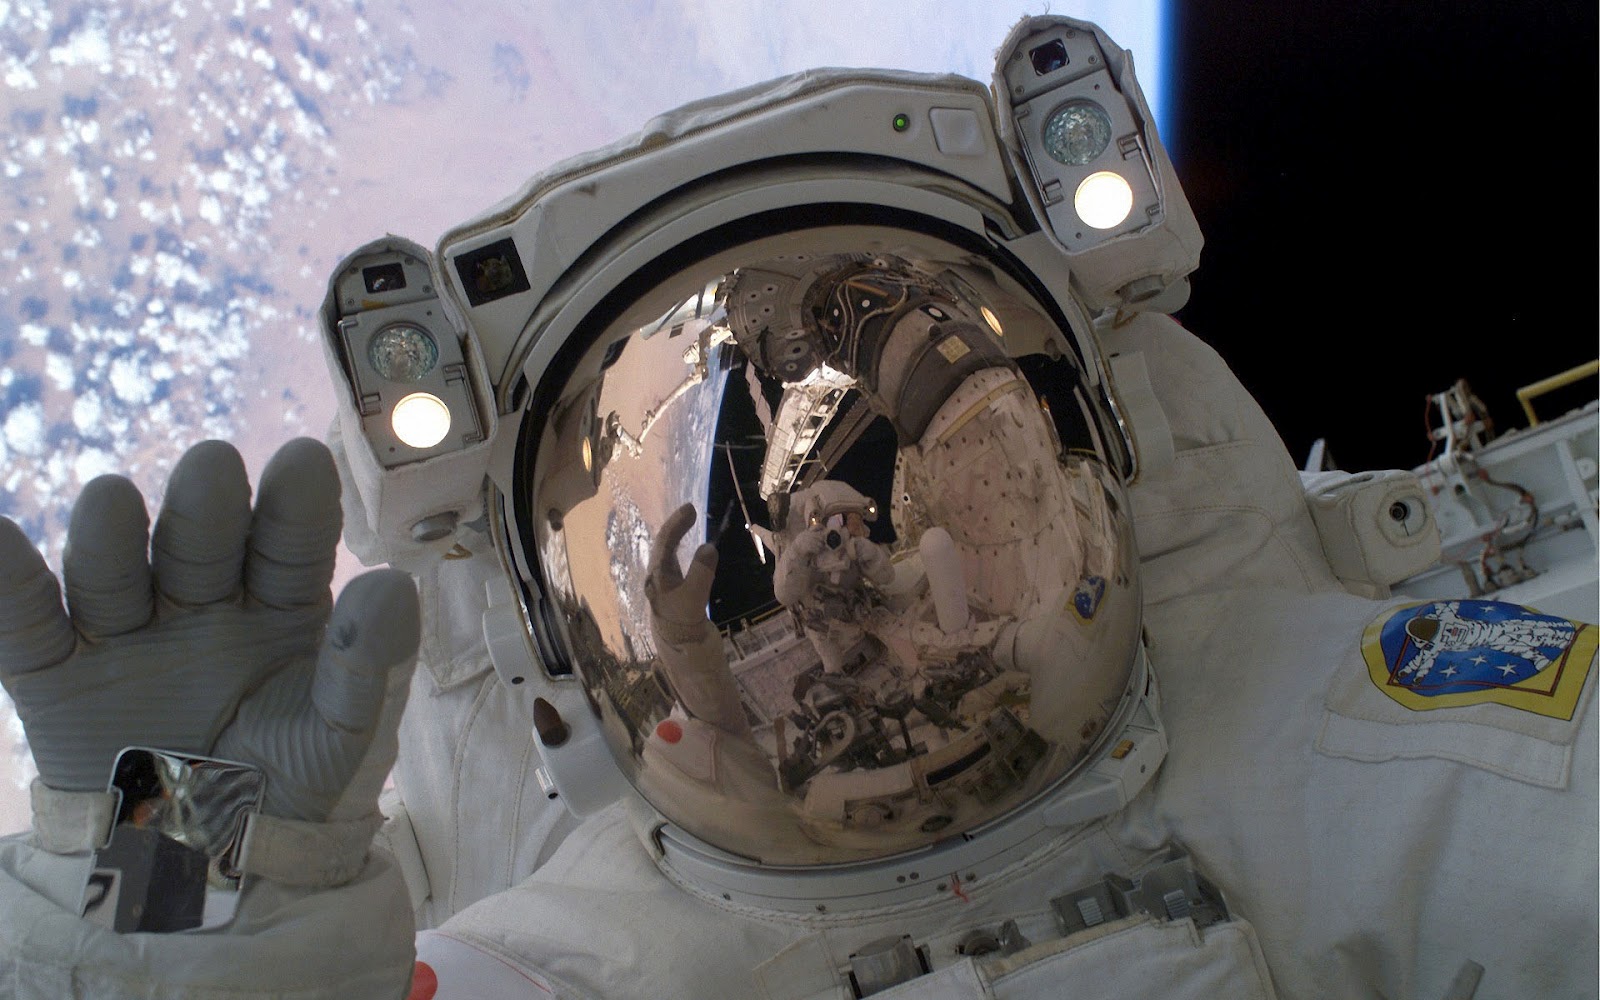  een astronaut in de ruimte met ruimtepak aan HD NASA wallpaper foto